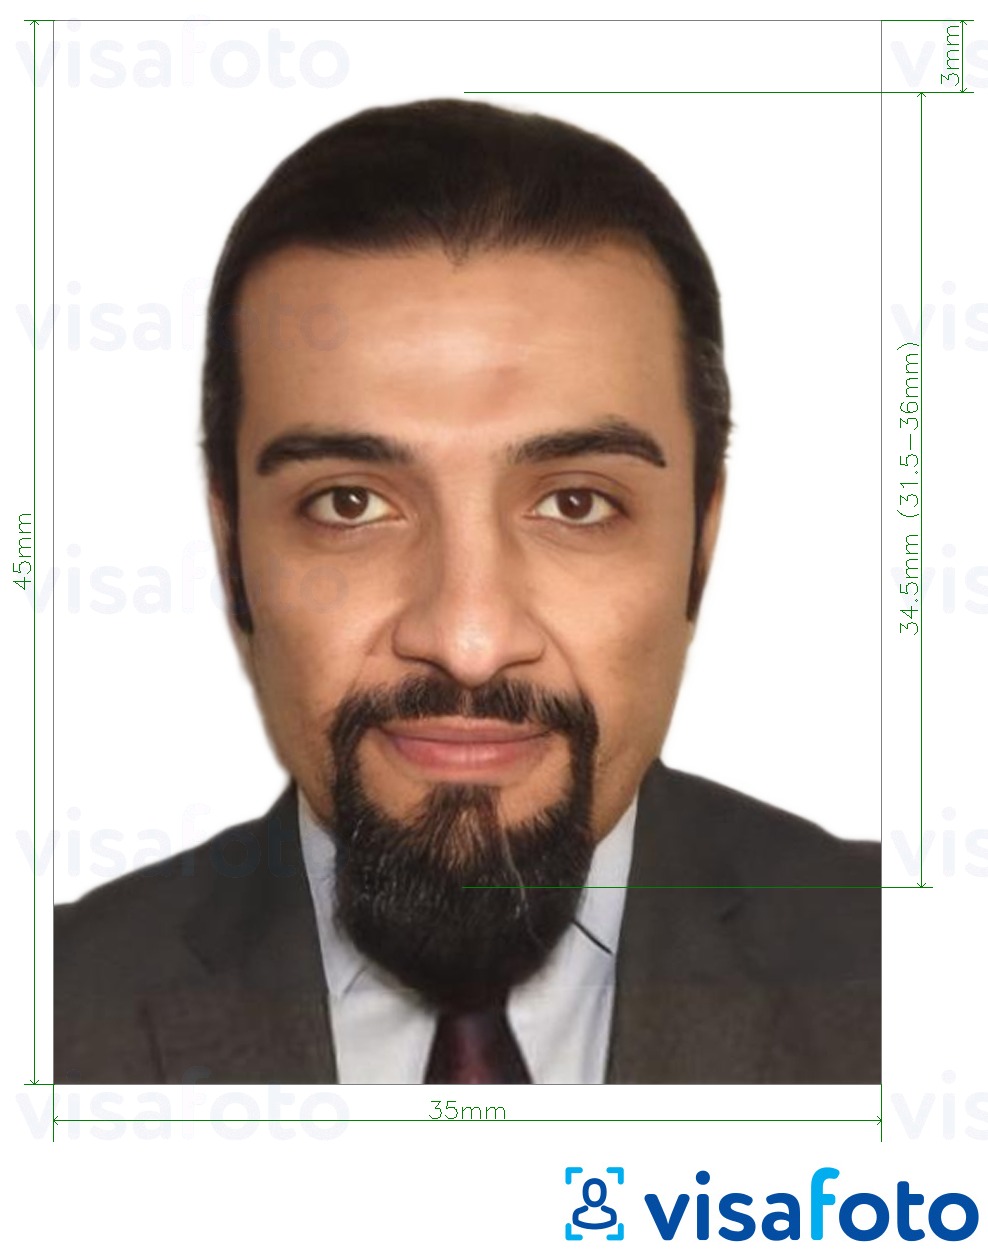 Primjer fotografije za E-viza za Etiopiju online 35x45 mm (3.5x4.5 cm) s točno određenom veličinom